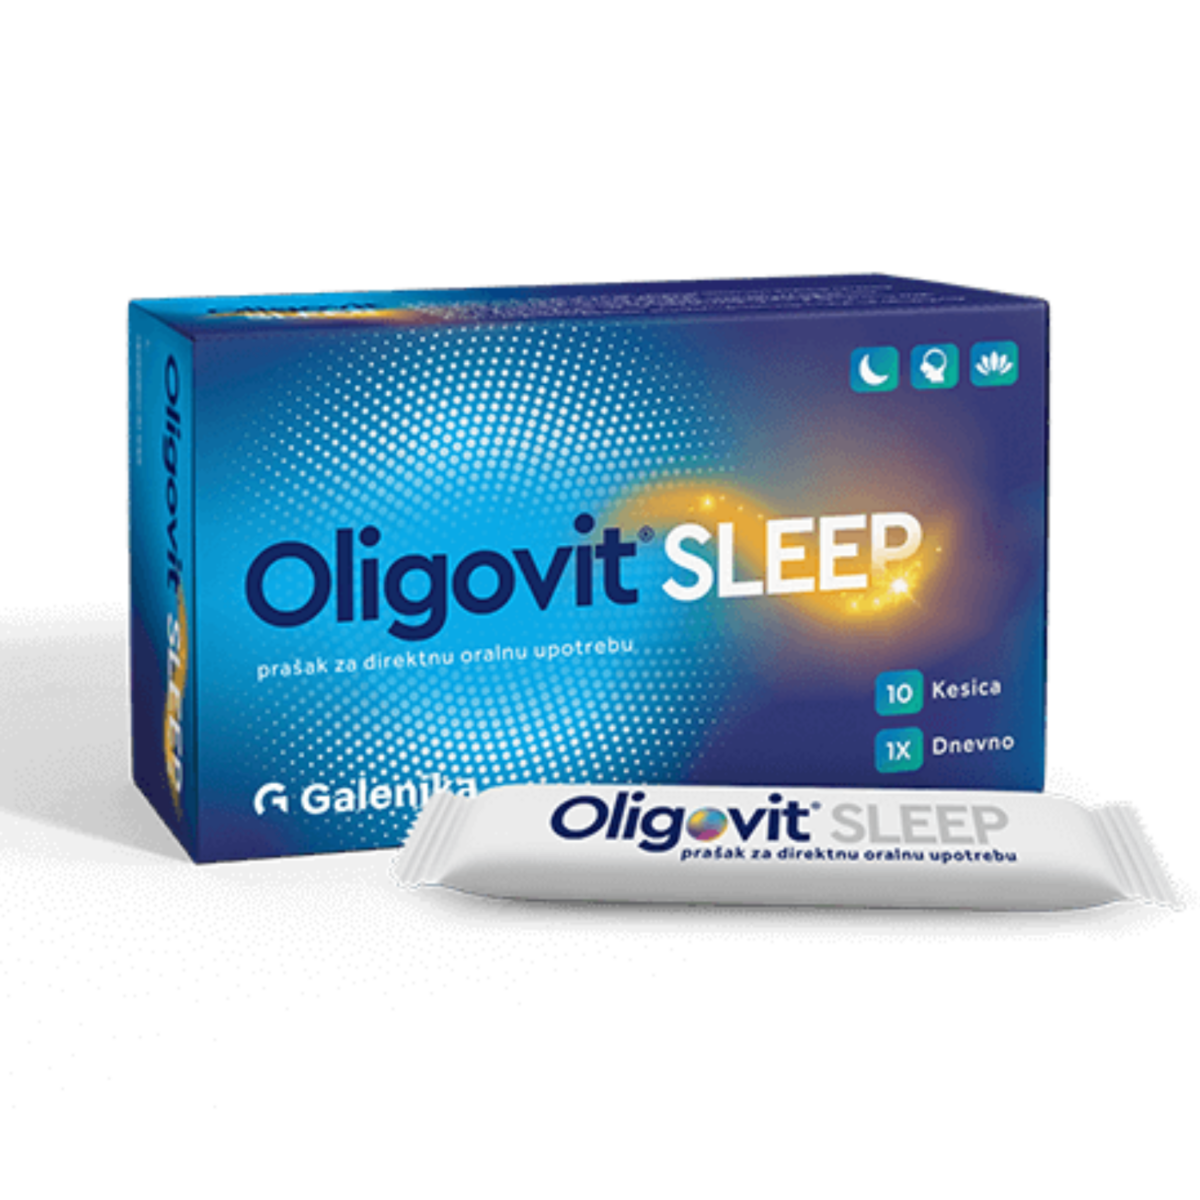 Oligovit Sleep 10 kesica